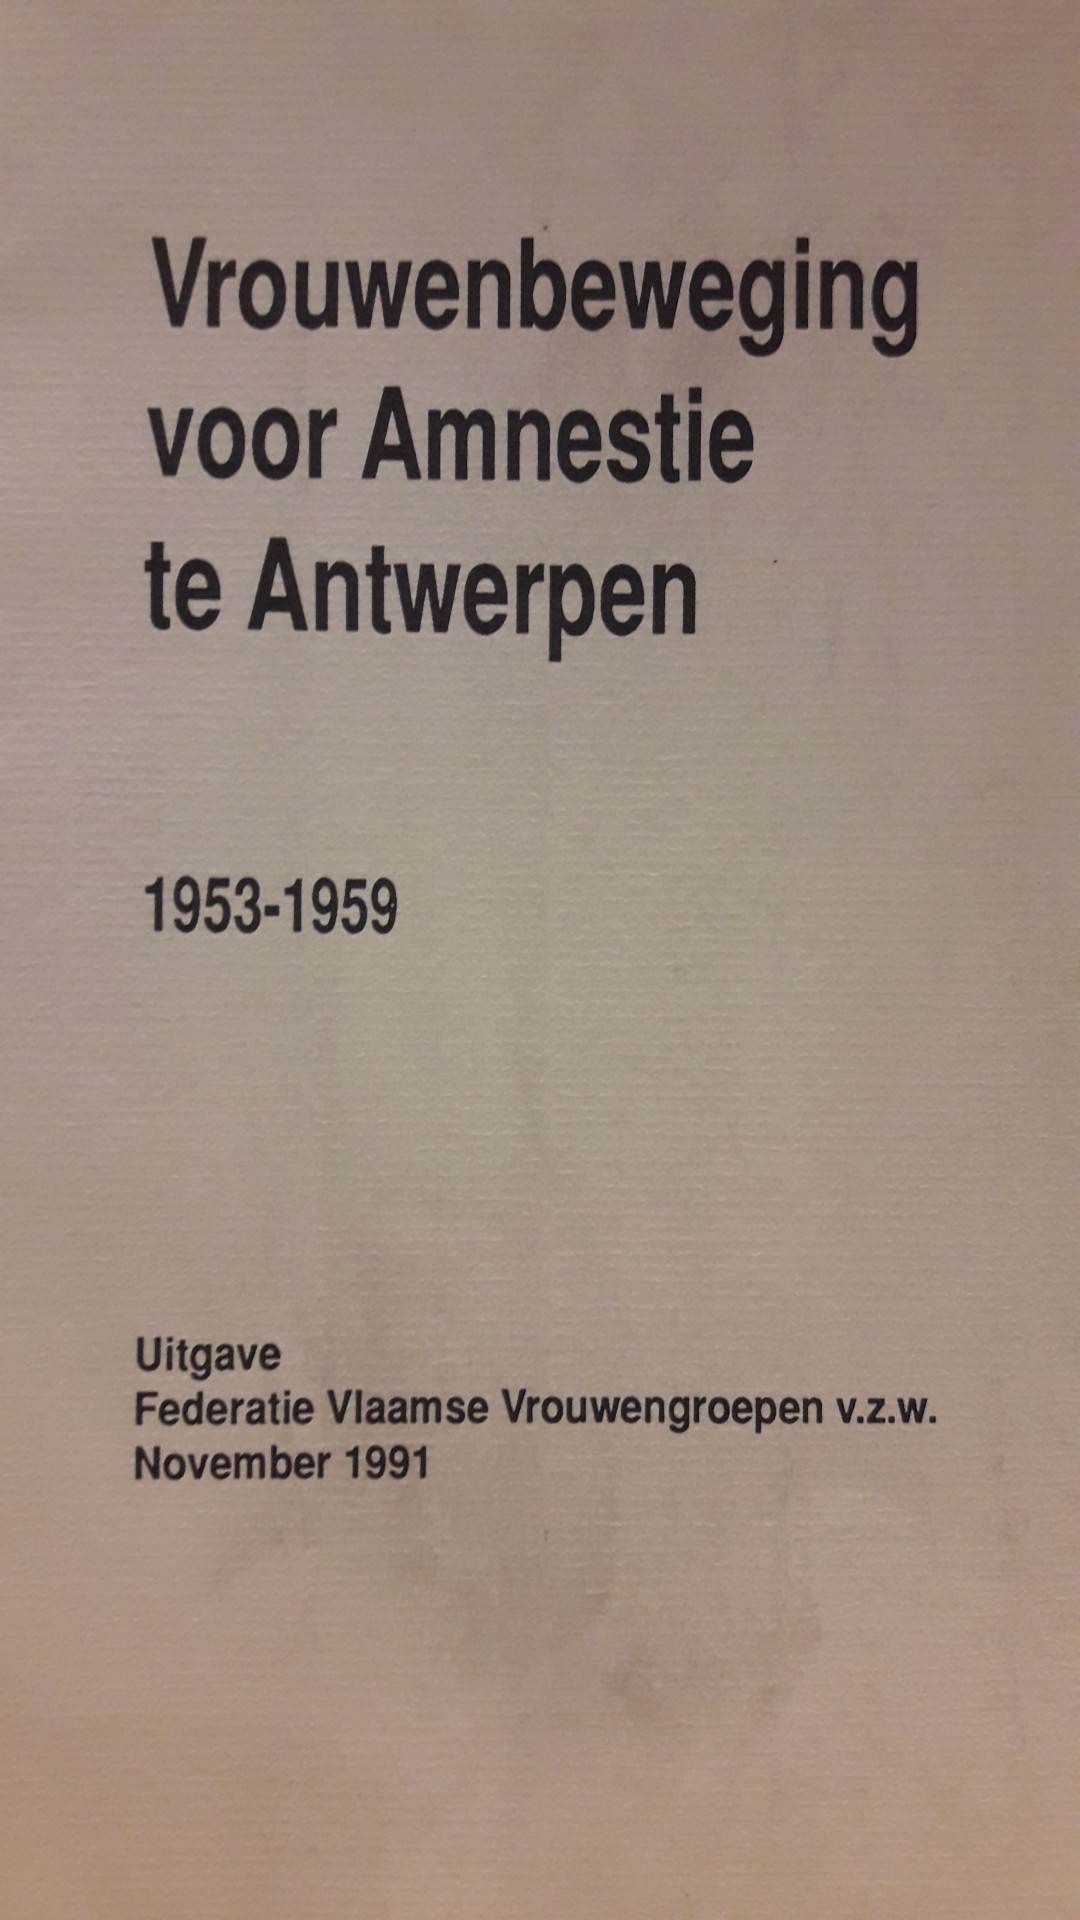 Vrouwenbeweging voor Amnestie in Antwerpen 1953 - 1959 / 60 blz